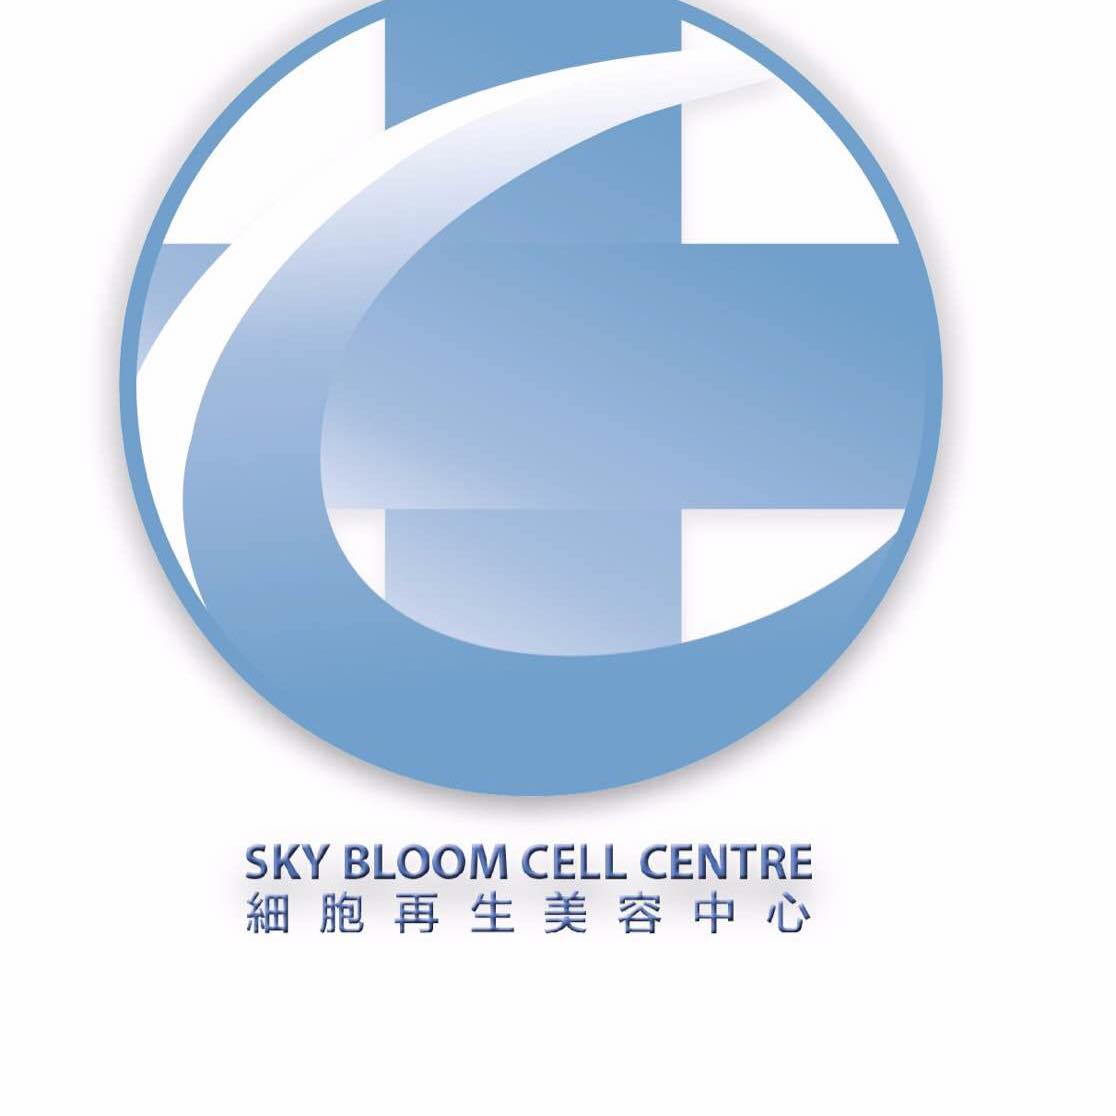 香港美容網 Hong Kong Beauty Salon 美容院 / 美容師: Sky Bloom Cell Beauty Centre 細胞再生美容中心